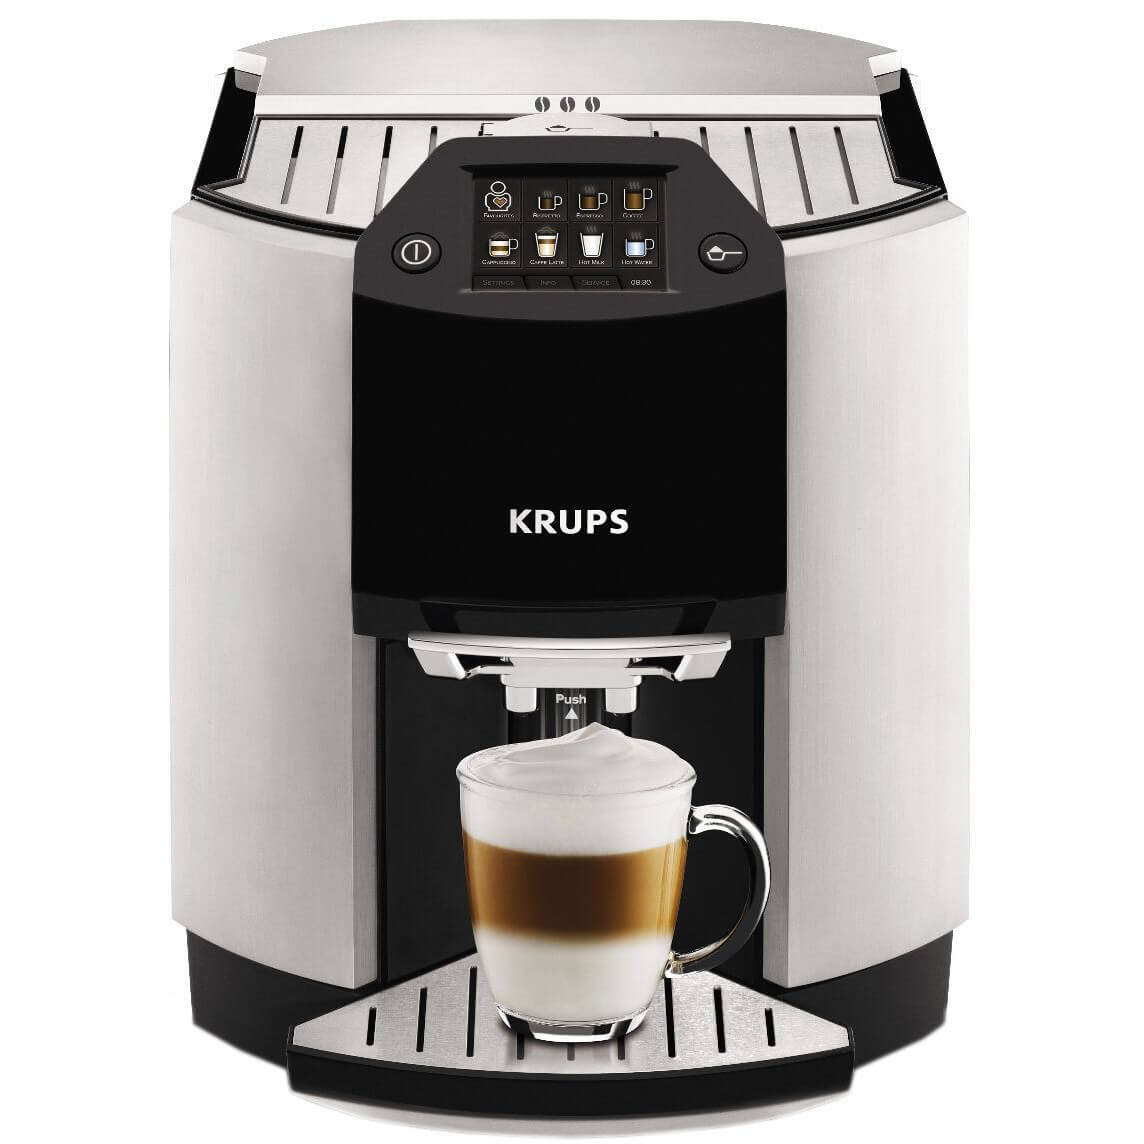  Espressor automat Krups Barista EA901030, 1450 W, 1.7 L, 15 bar, Argintiu 